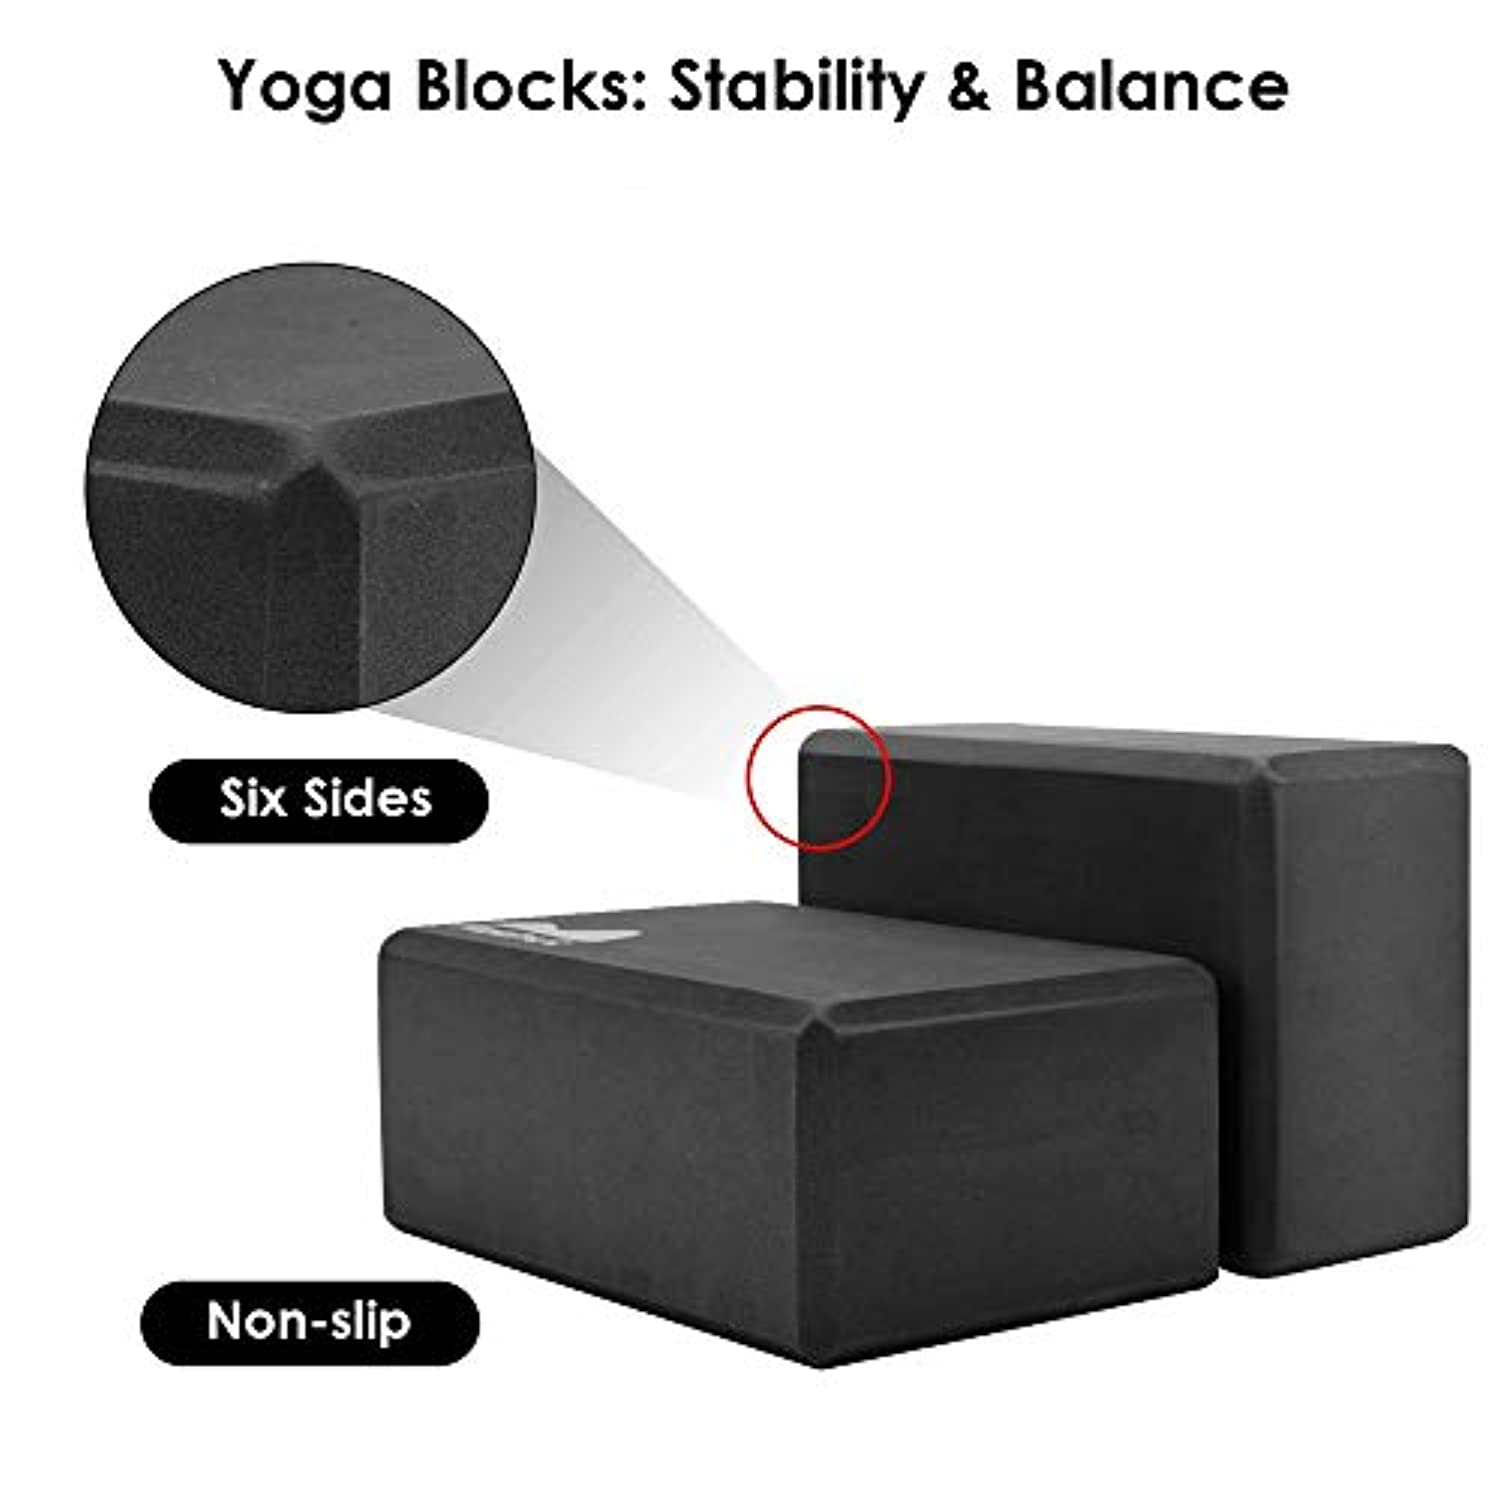 Props y Yoga': Hablemos de los Bloques - BalanceArte